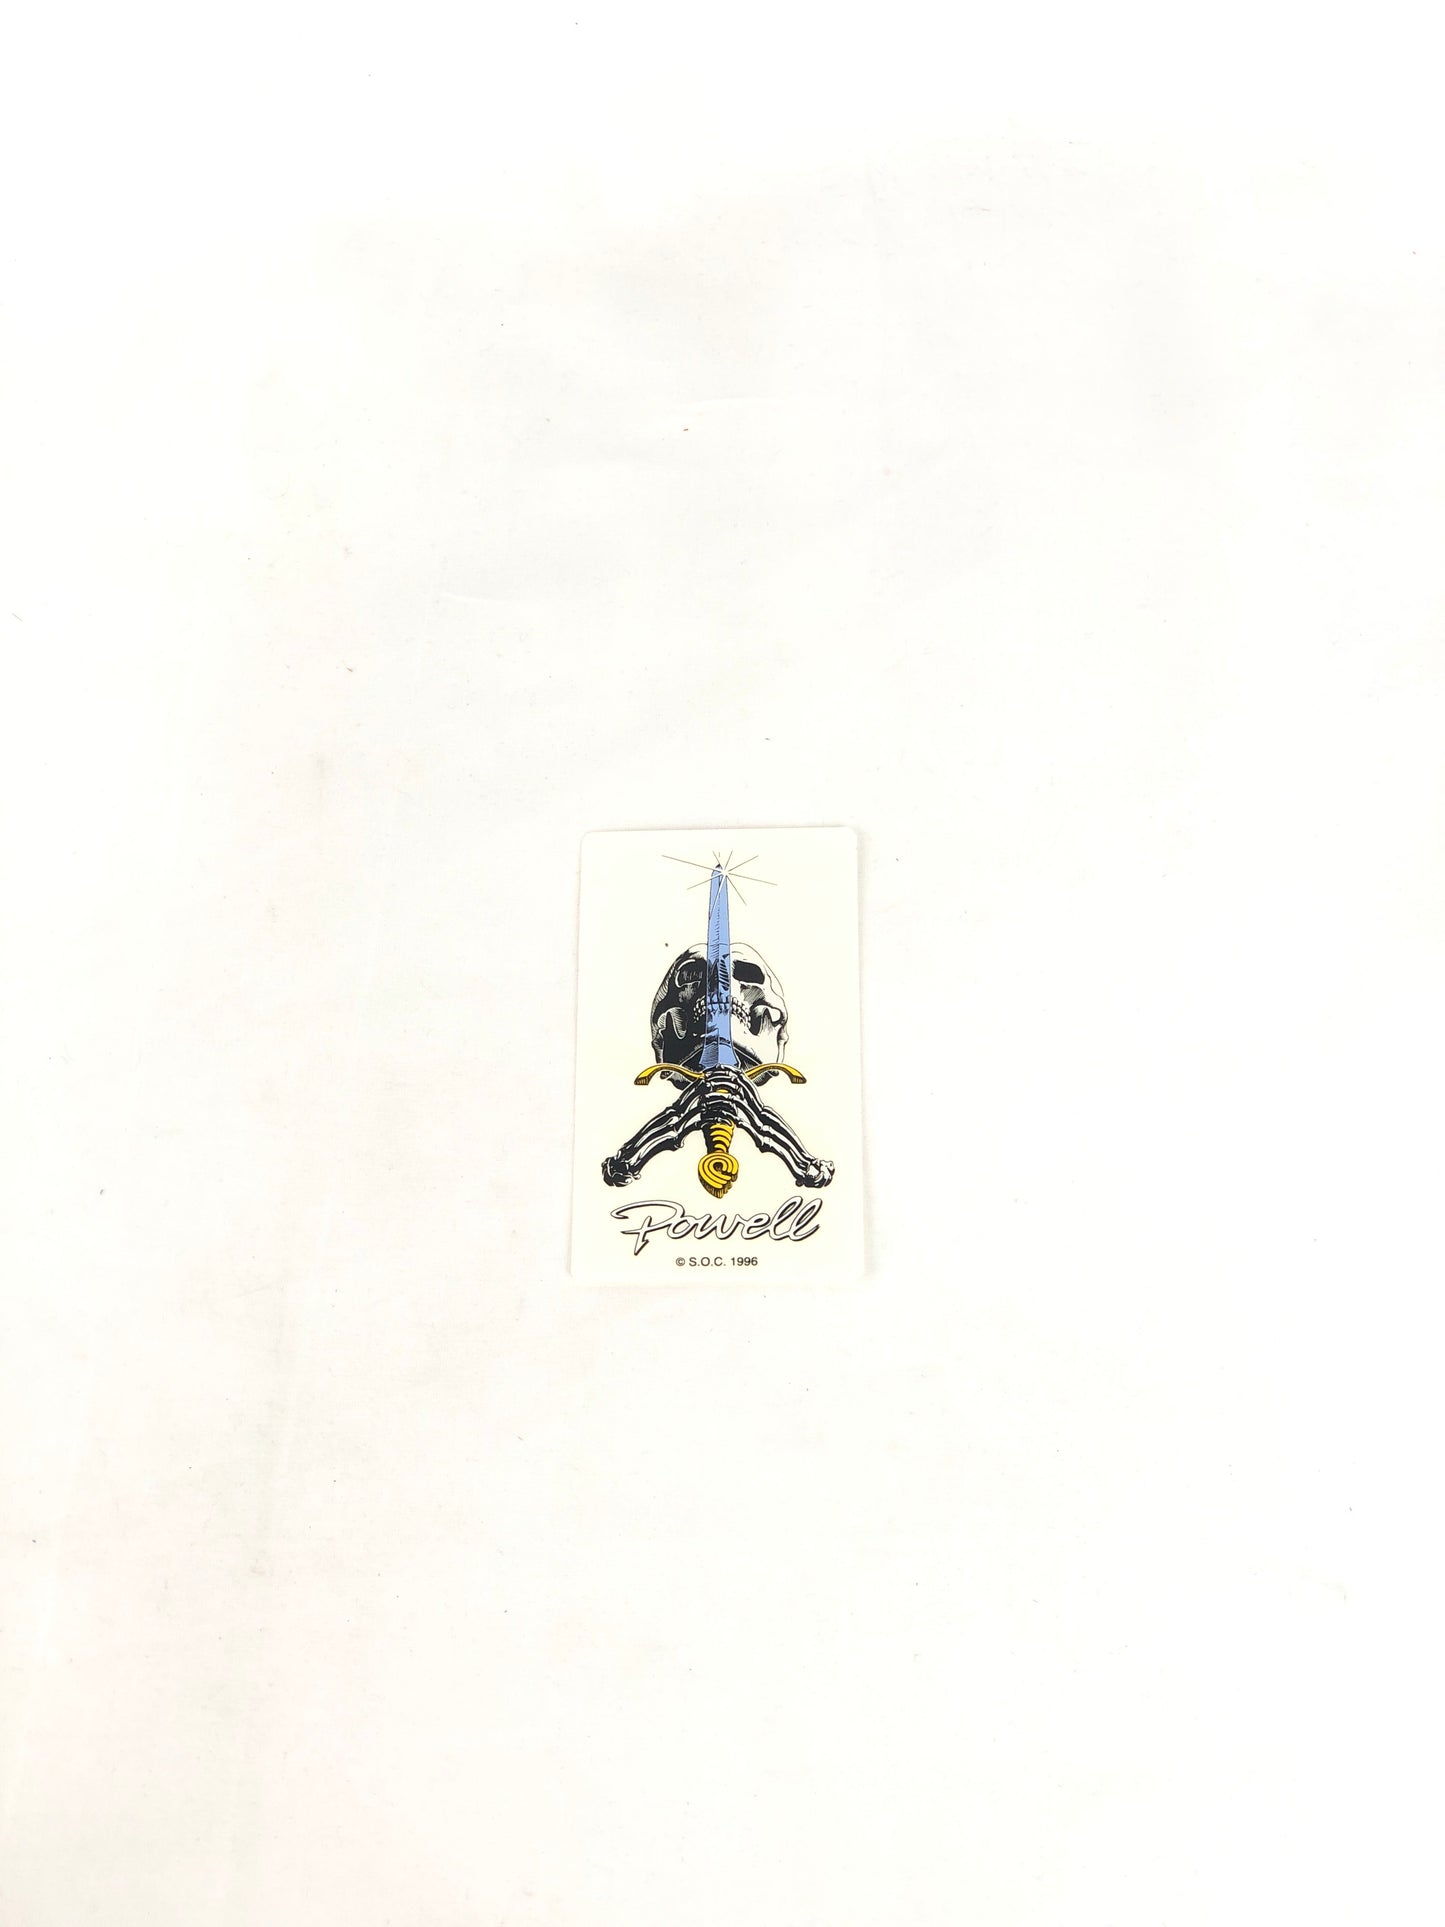 Powell Peralta Skull Sword Clear Black 4" x 2.3" Sticker 1996 VCJ